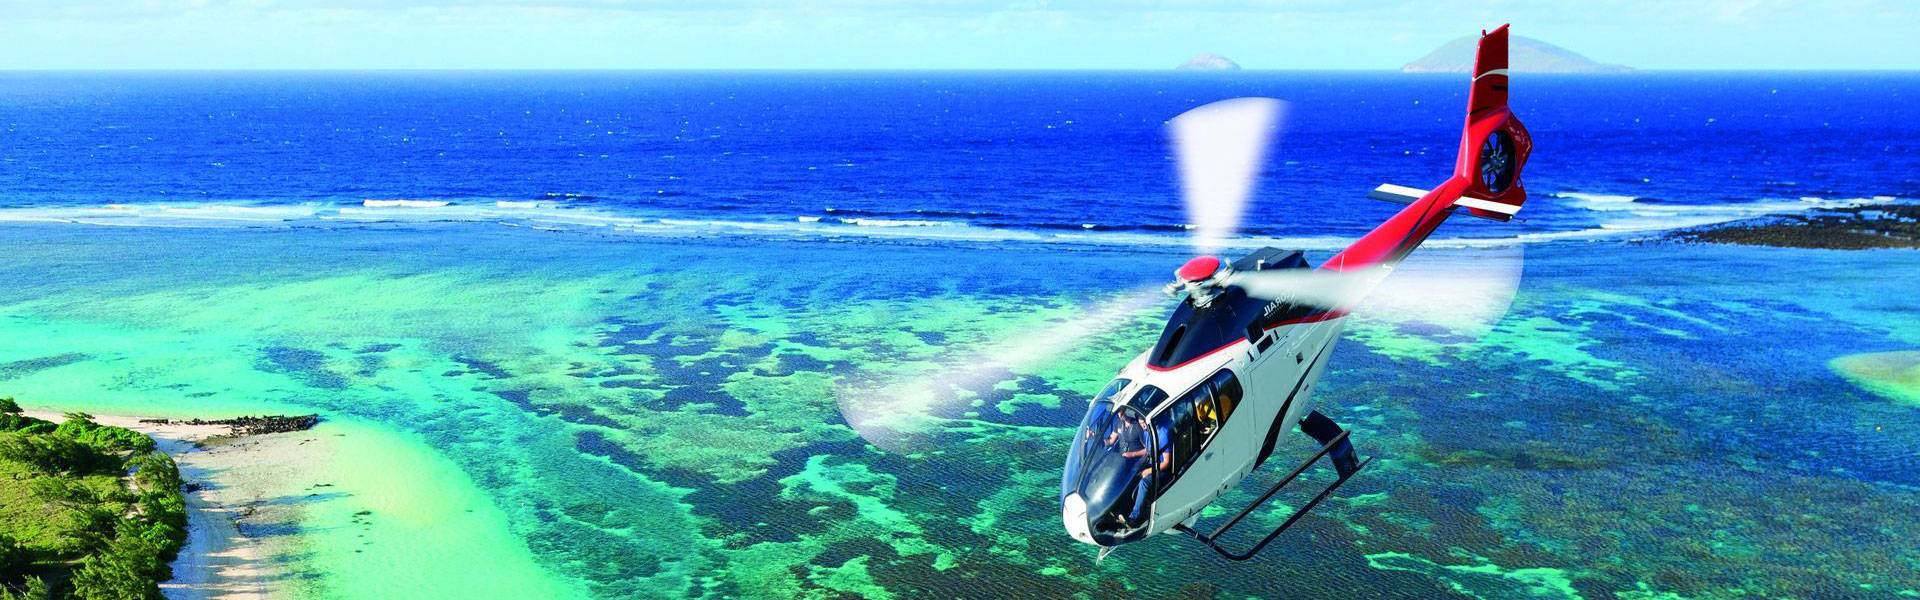 Pourquoi découvrir l’île Maurice en hélicoptère ?